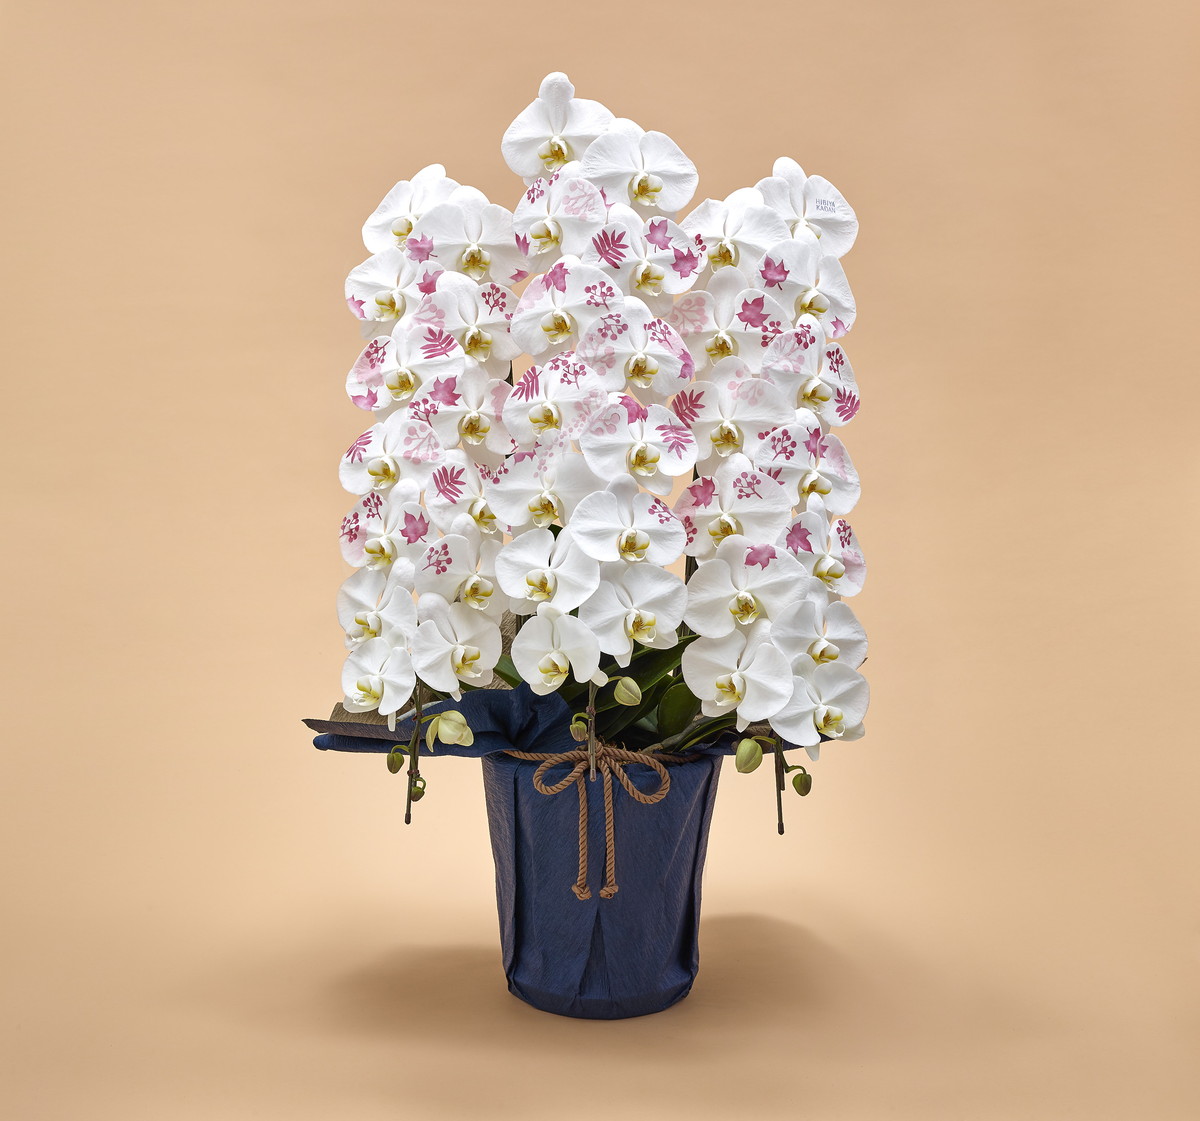 日比谷花壇オリジナル化粧蘭日比谷花壇が厳選した、ハイクオリティーの胡蝶蘭に花や情景絵柄を施した「オリジナル化粧蘭」